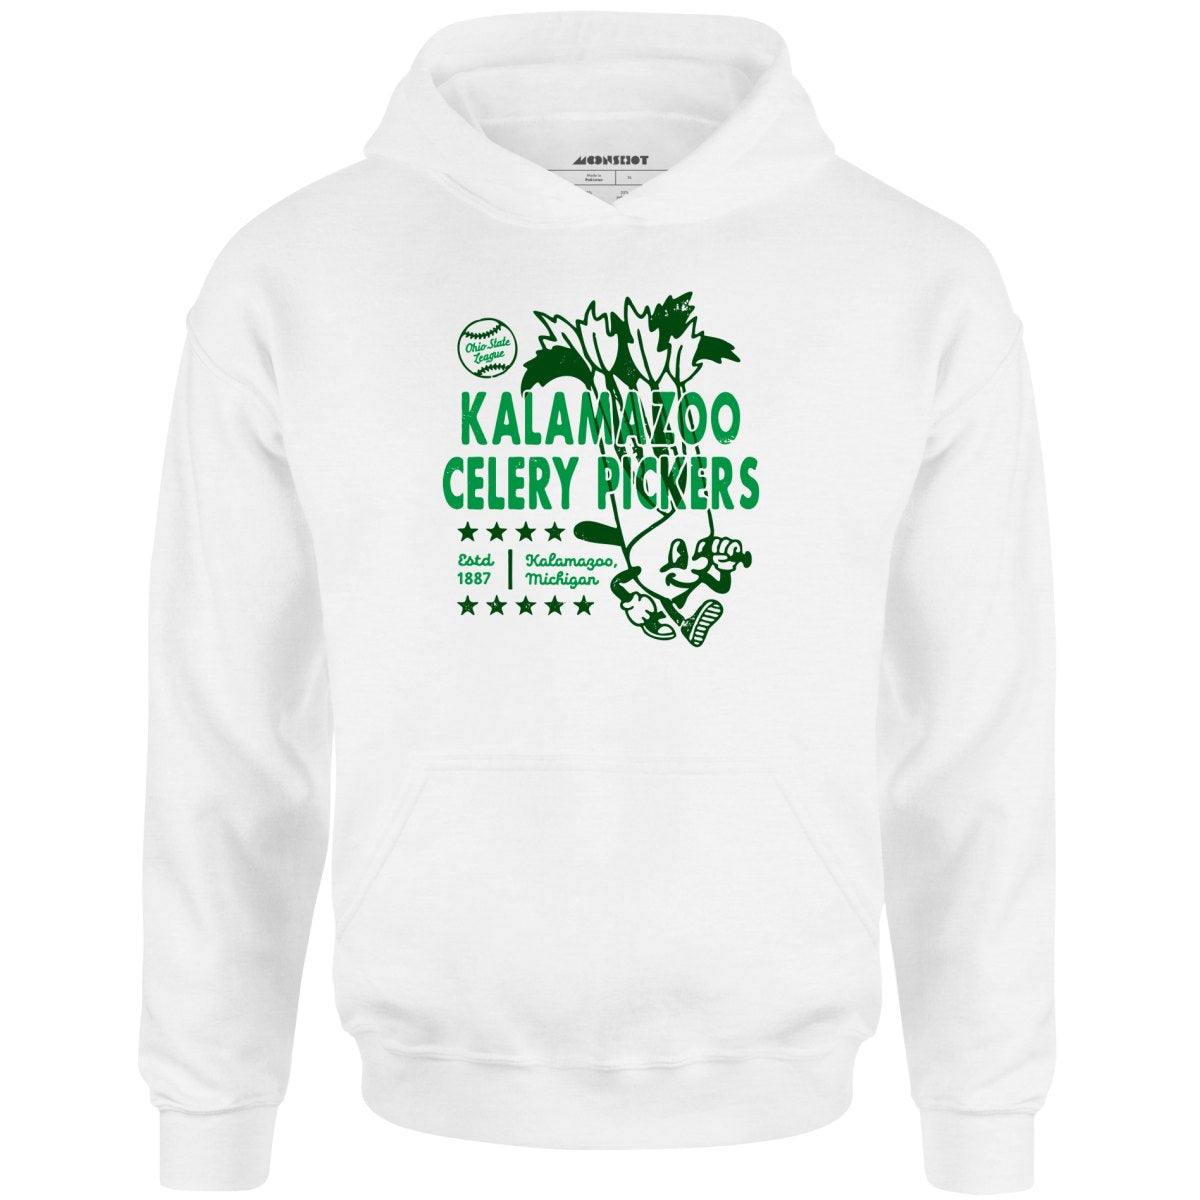 Kalamazoo Celery Pickers - Michigan - Vintage Defunct Baseball Teams - Unisex Hoodie